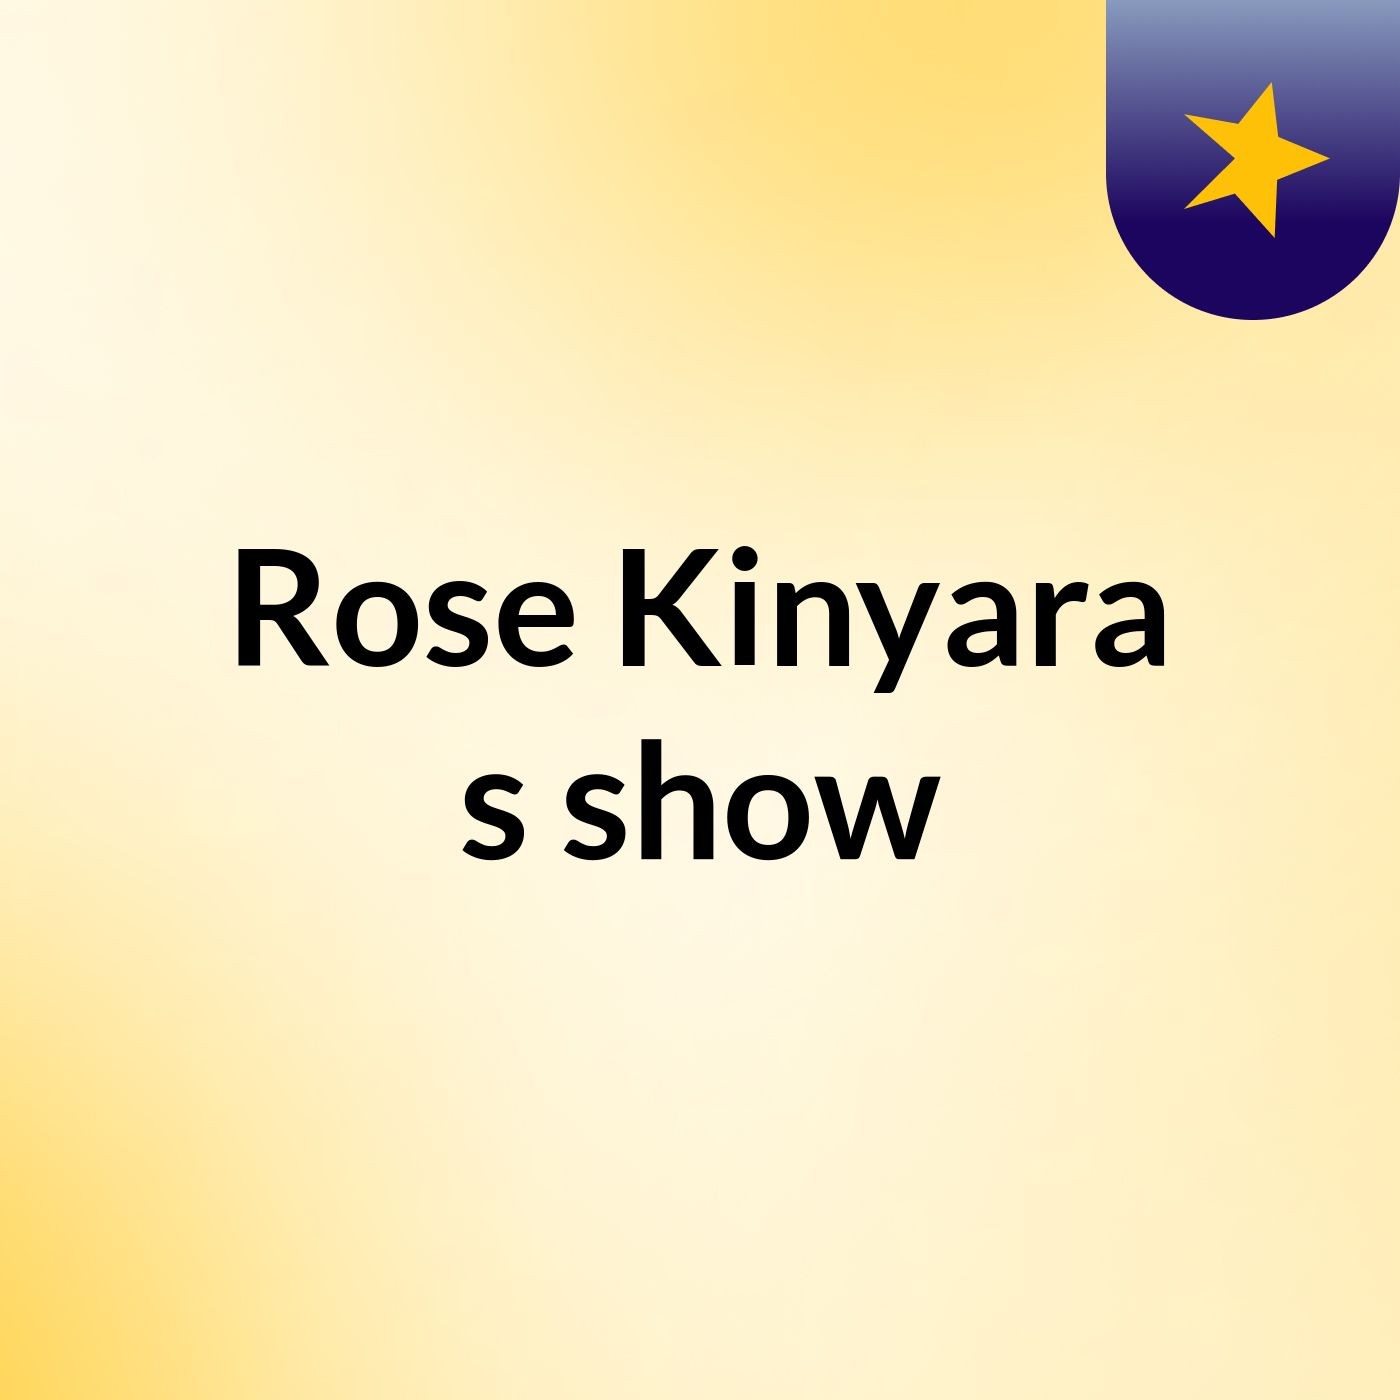 Rose Kinyara's show